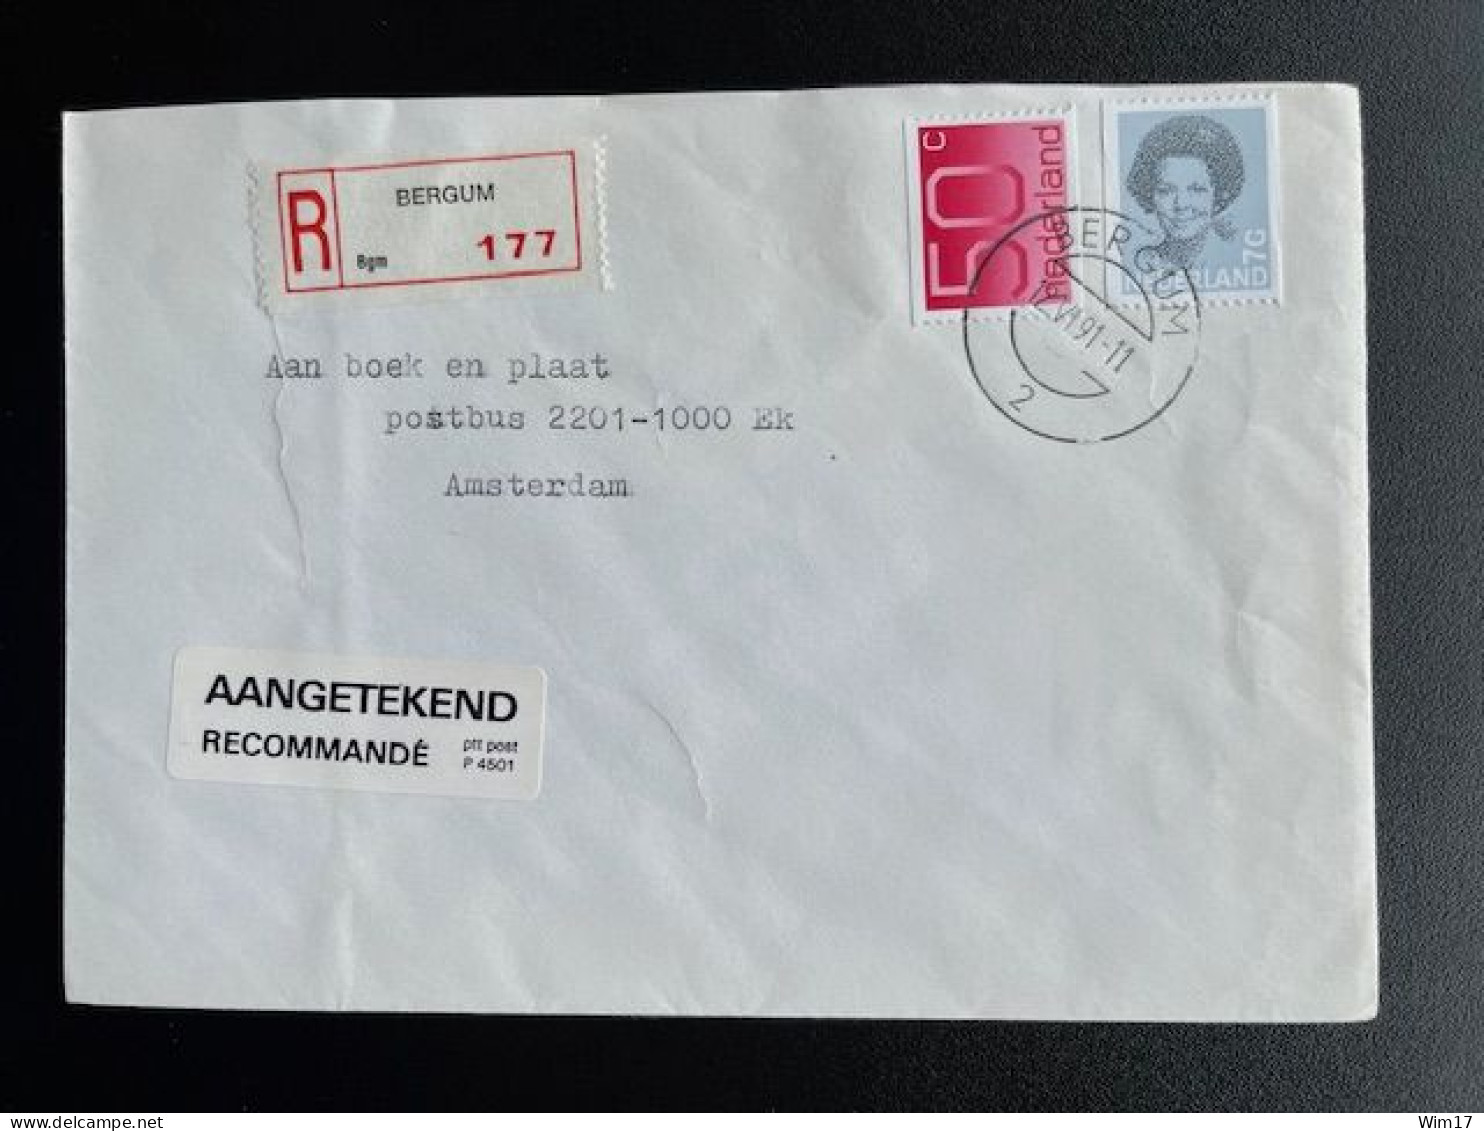 NETHERLANDS 1991 REGISTERED LETTER BERGUM TO AMSTERDAM 12-06-1991 NEDERLAND AANGETEKEND - Briefe U. Dokumente